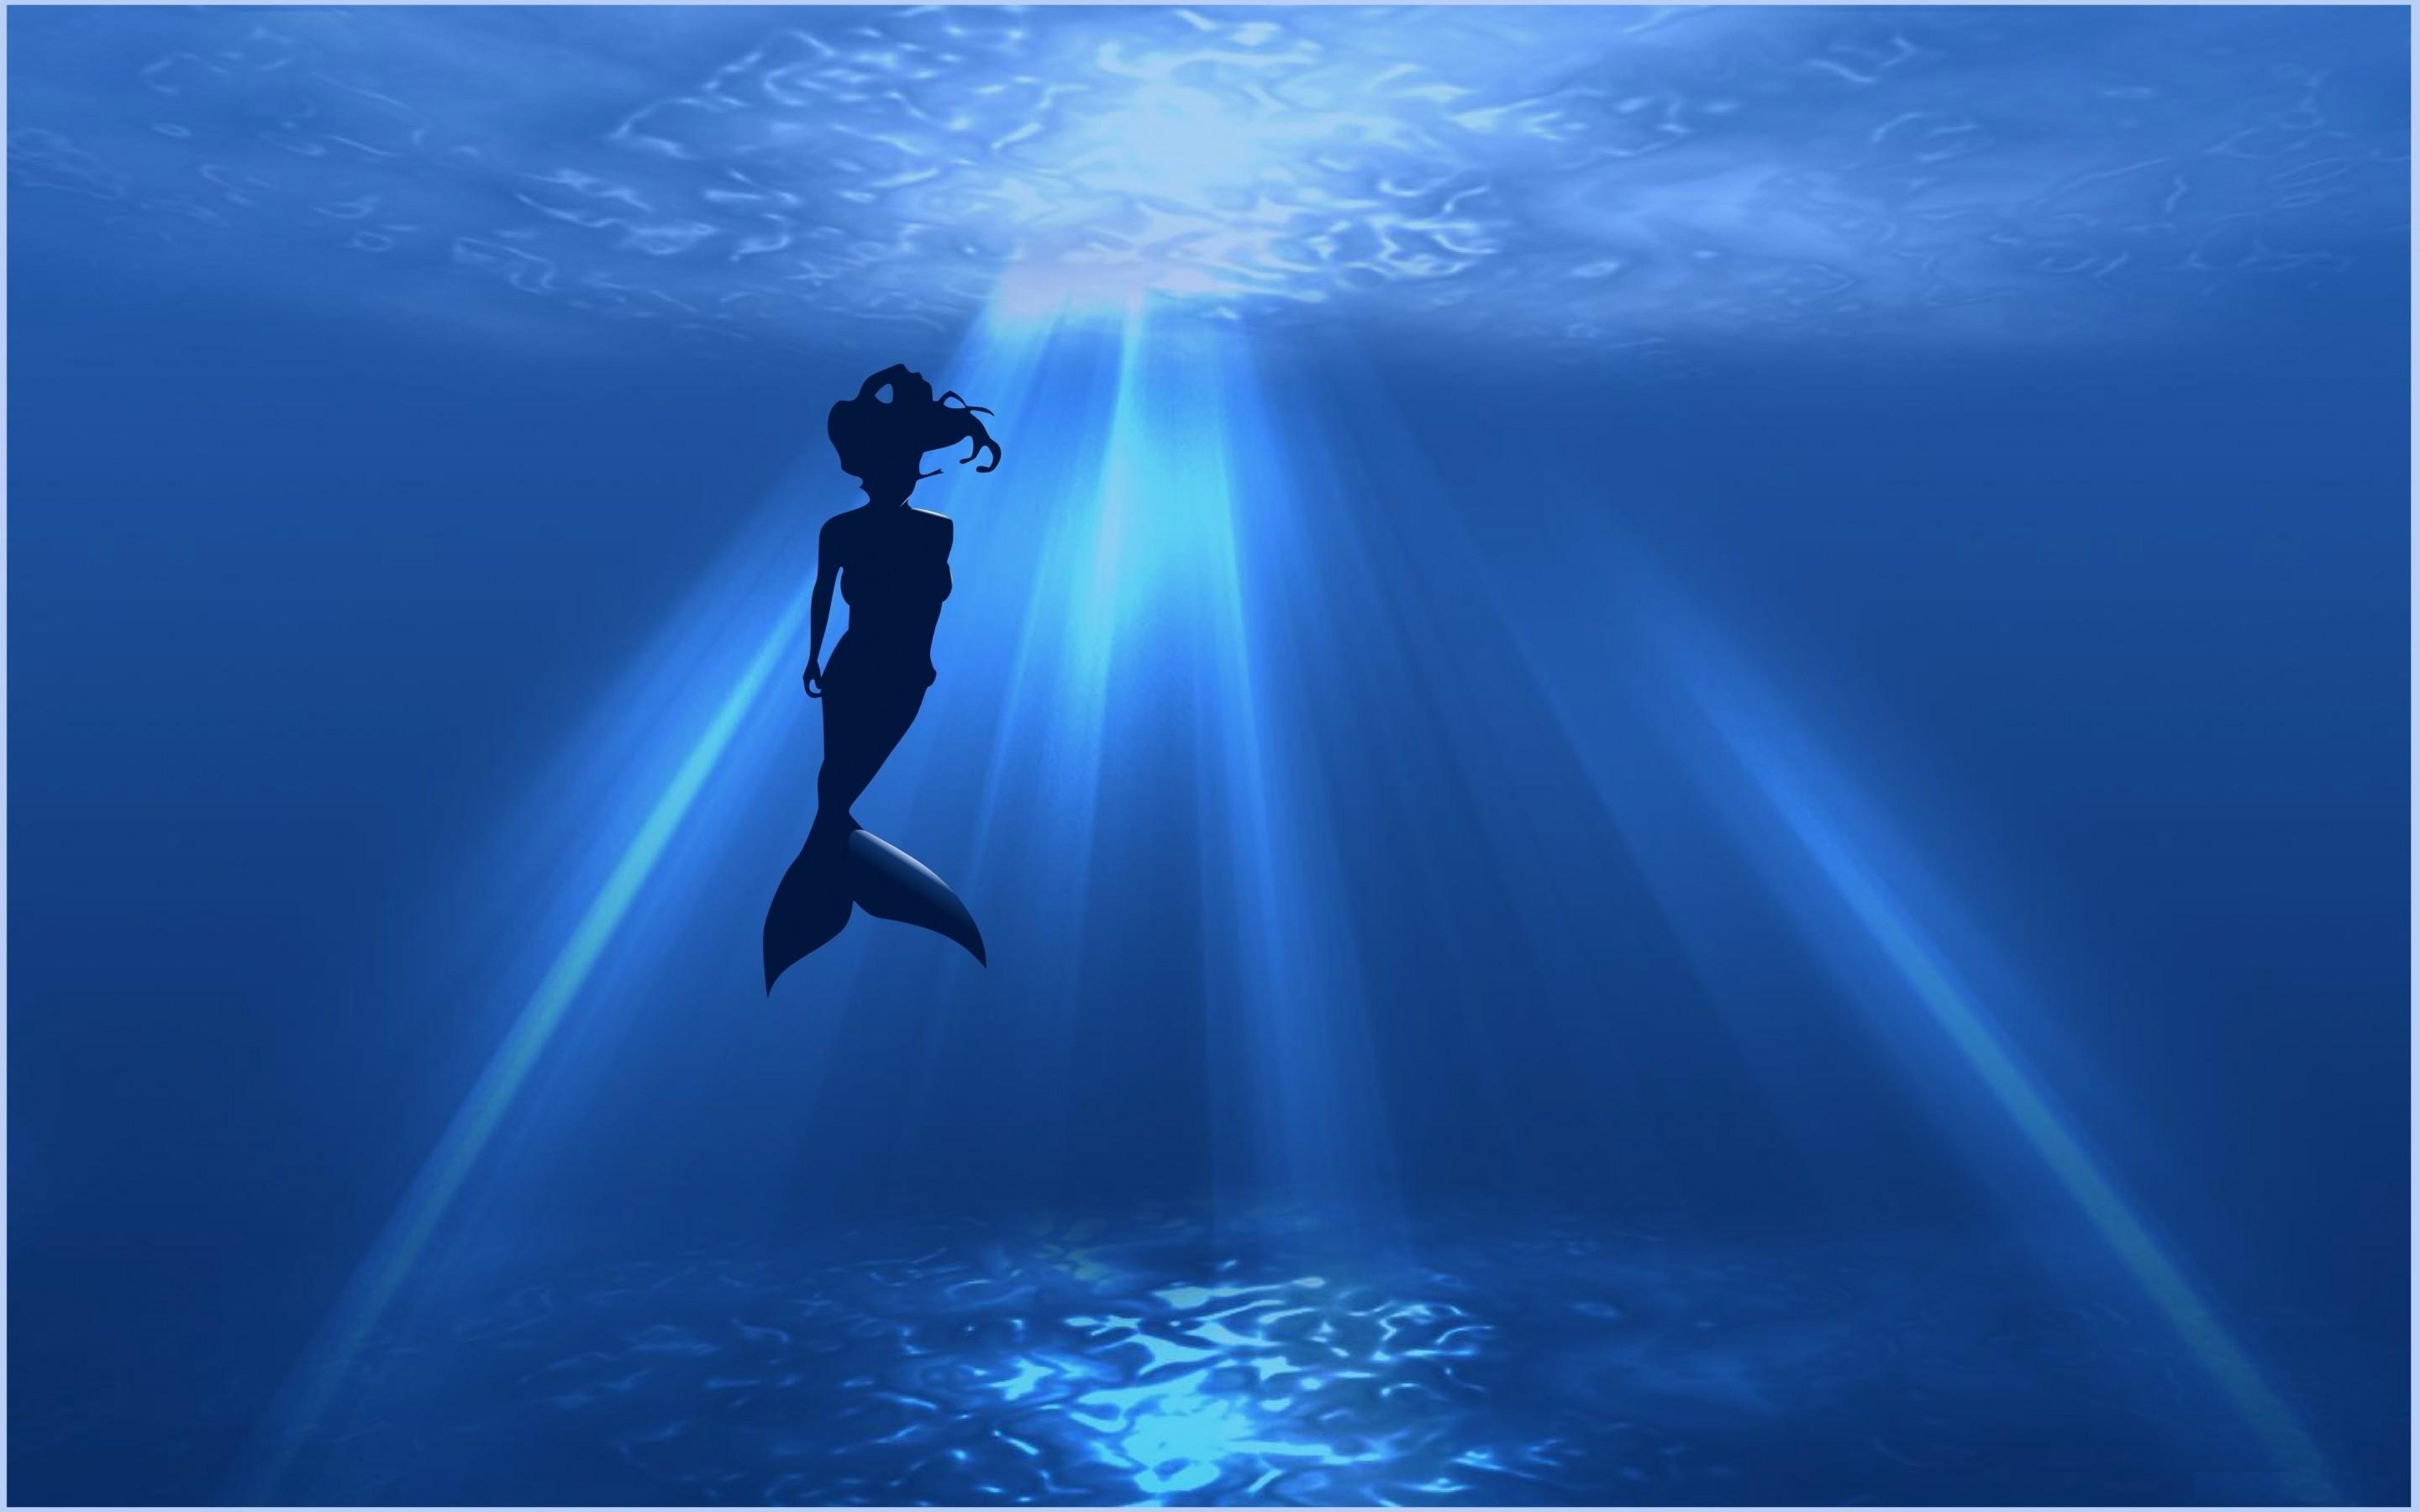 Abstract Mermaid Wallpaper Silhouette In Ocean, HD